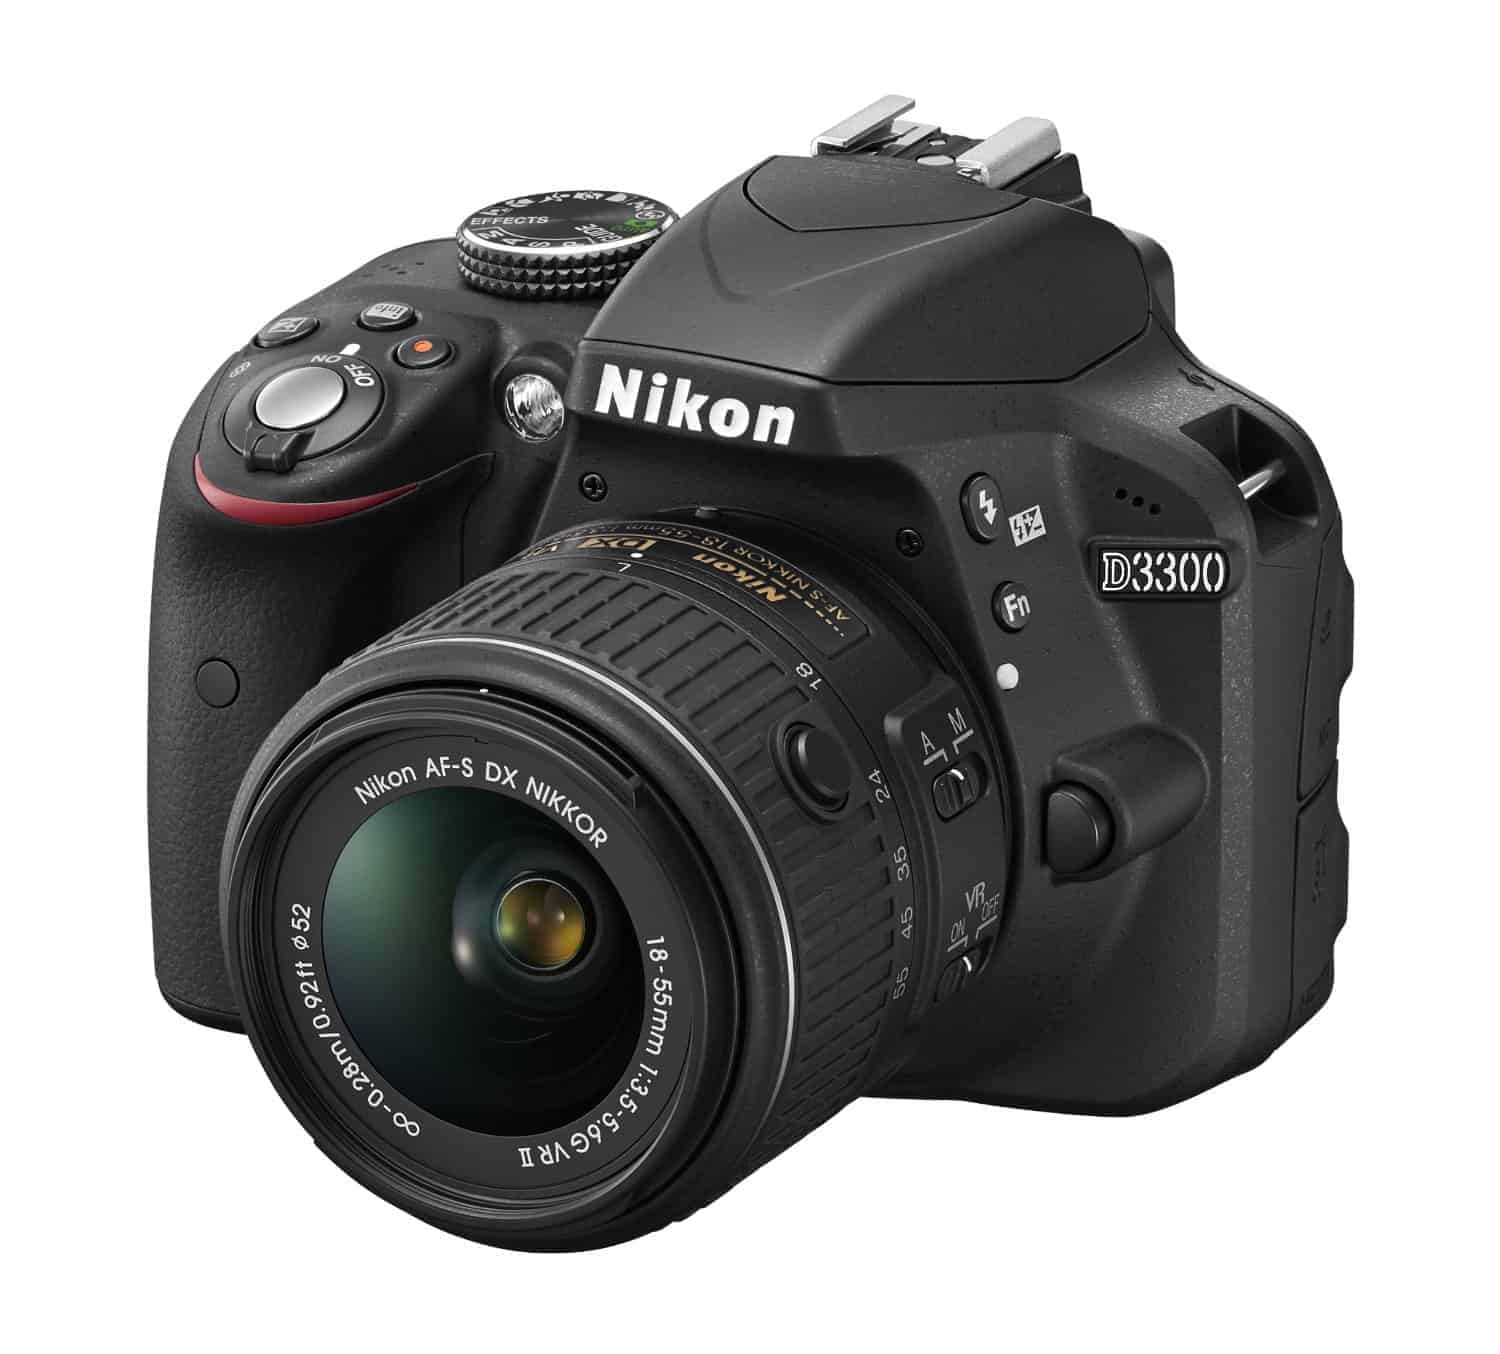 Nikon D3300 manual